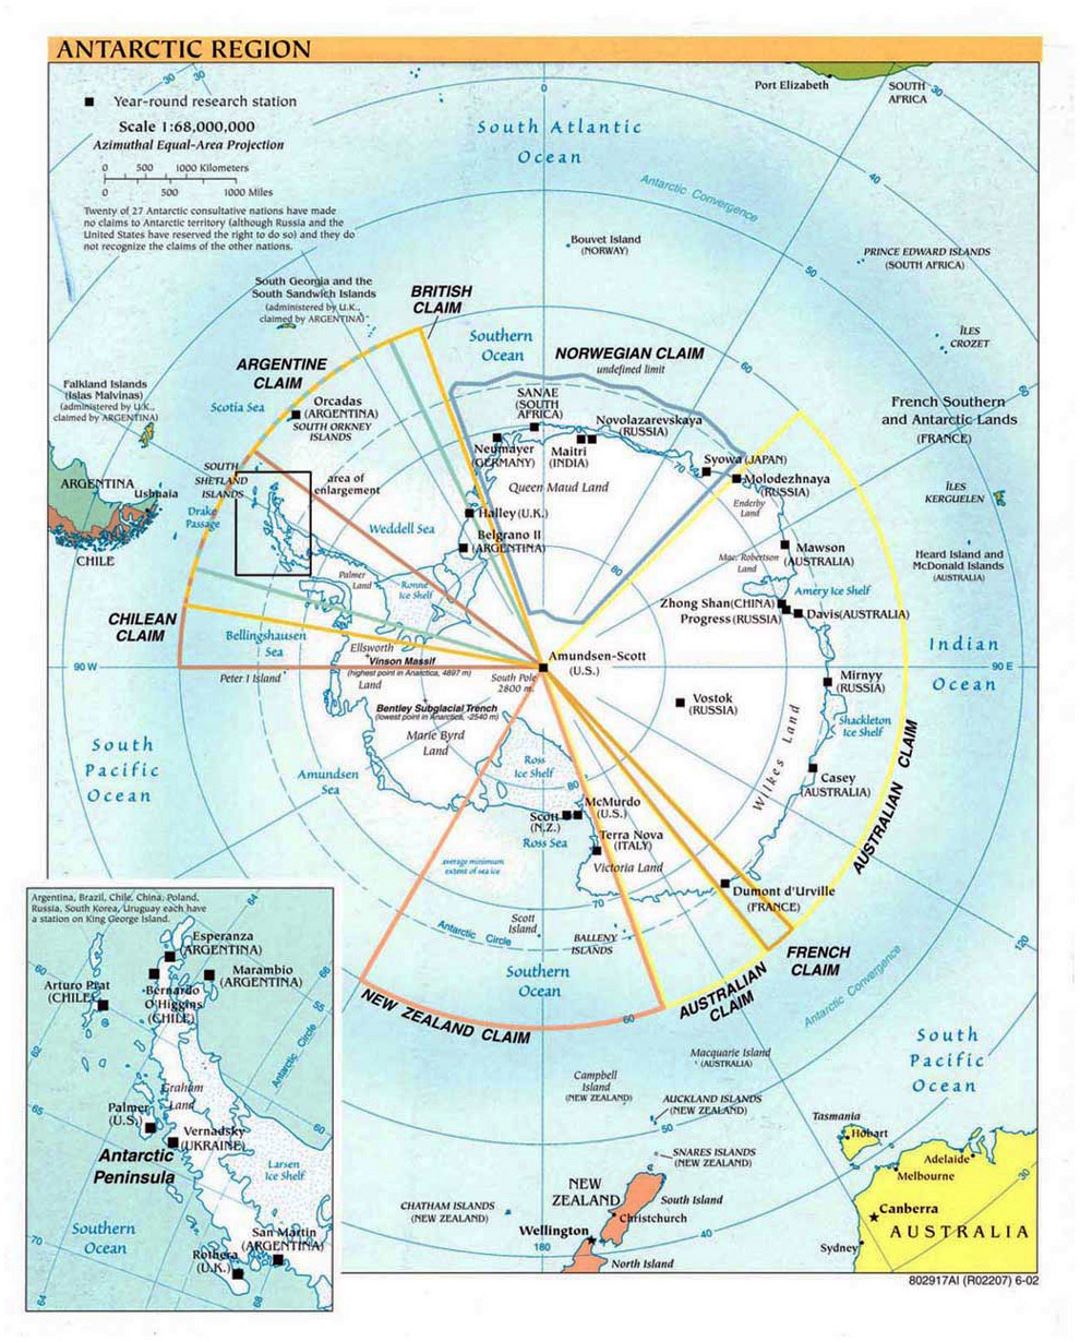 Mapa político de la Región Antártica detallada - 2002